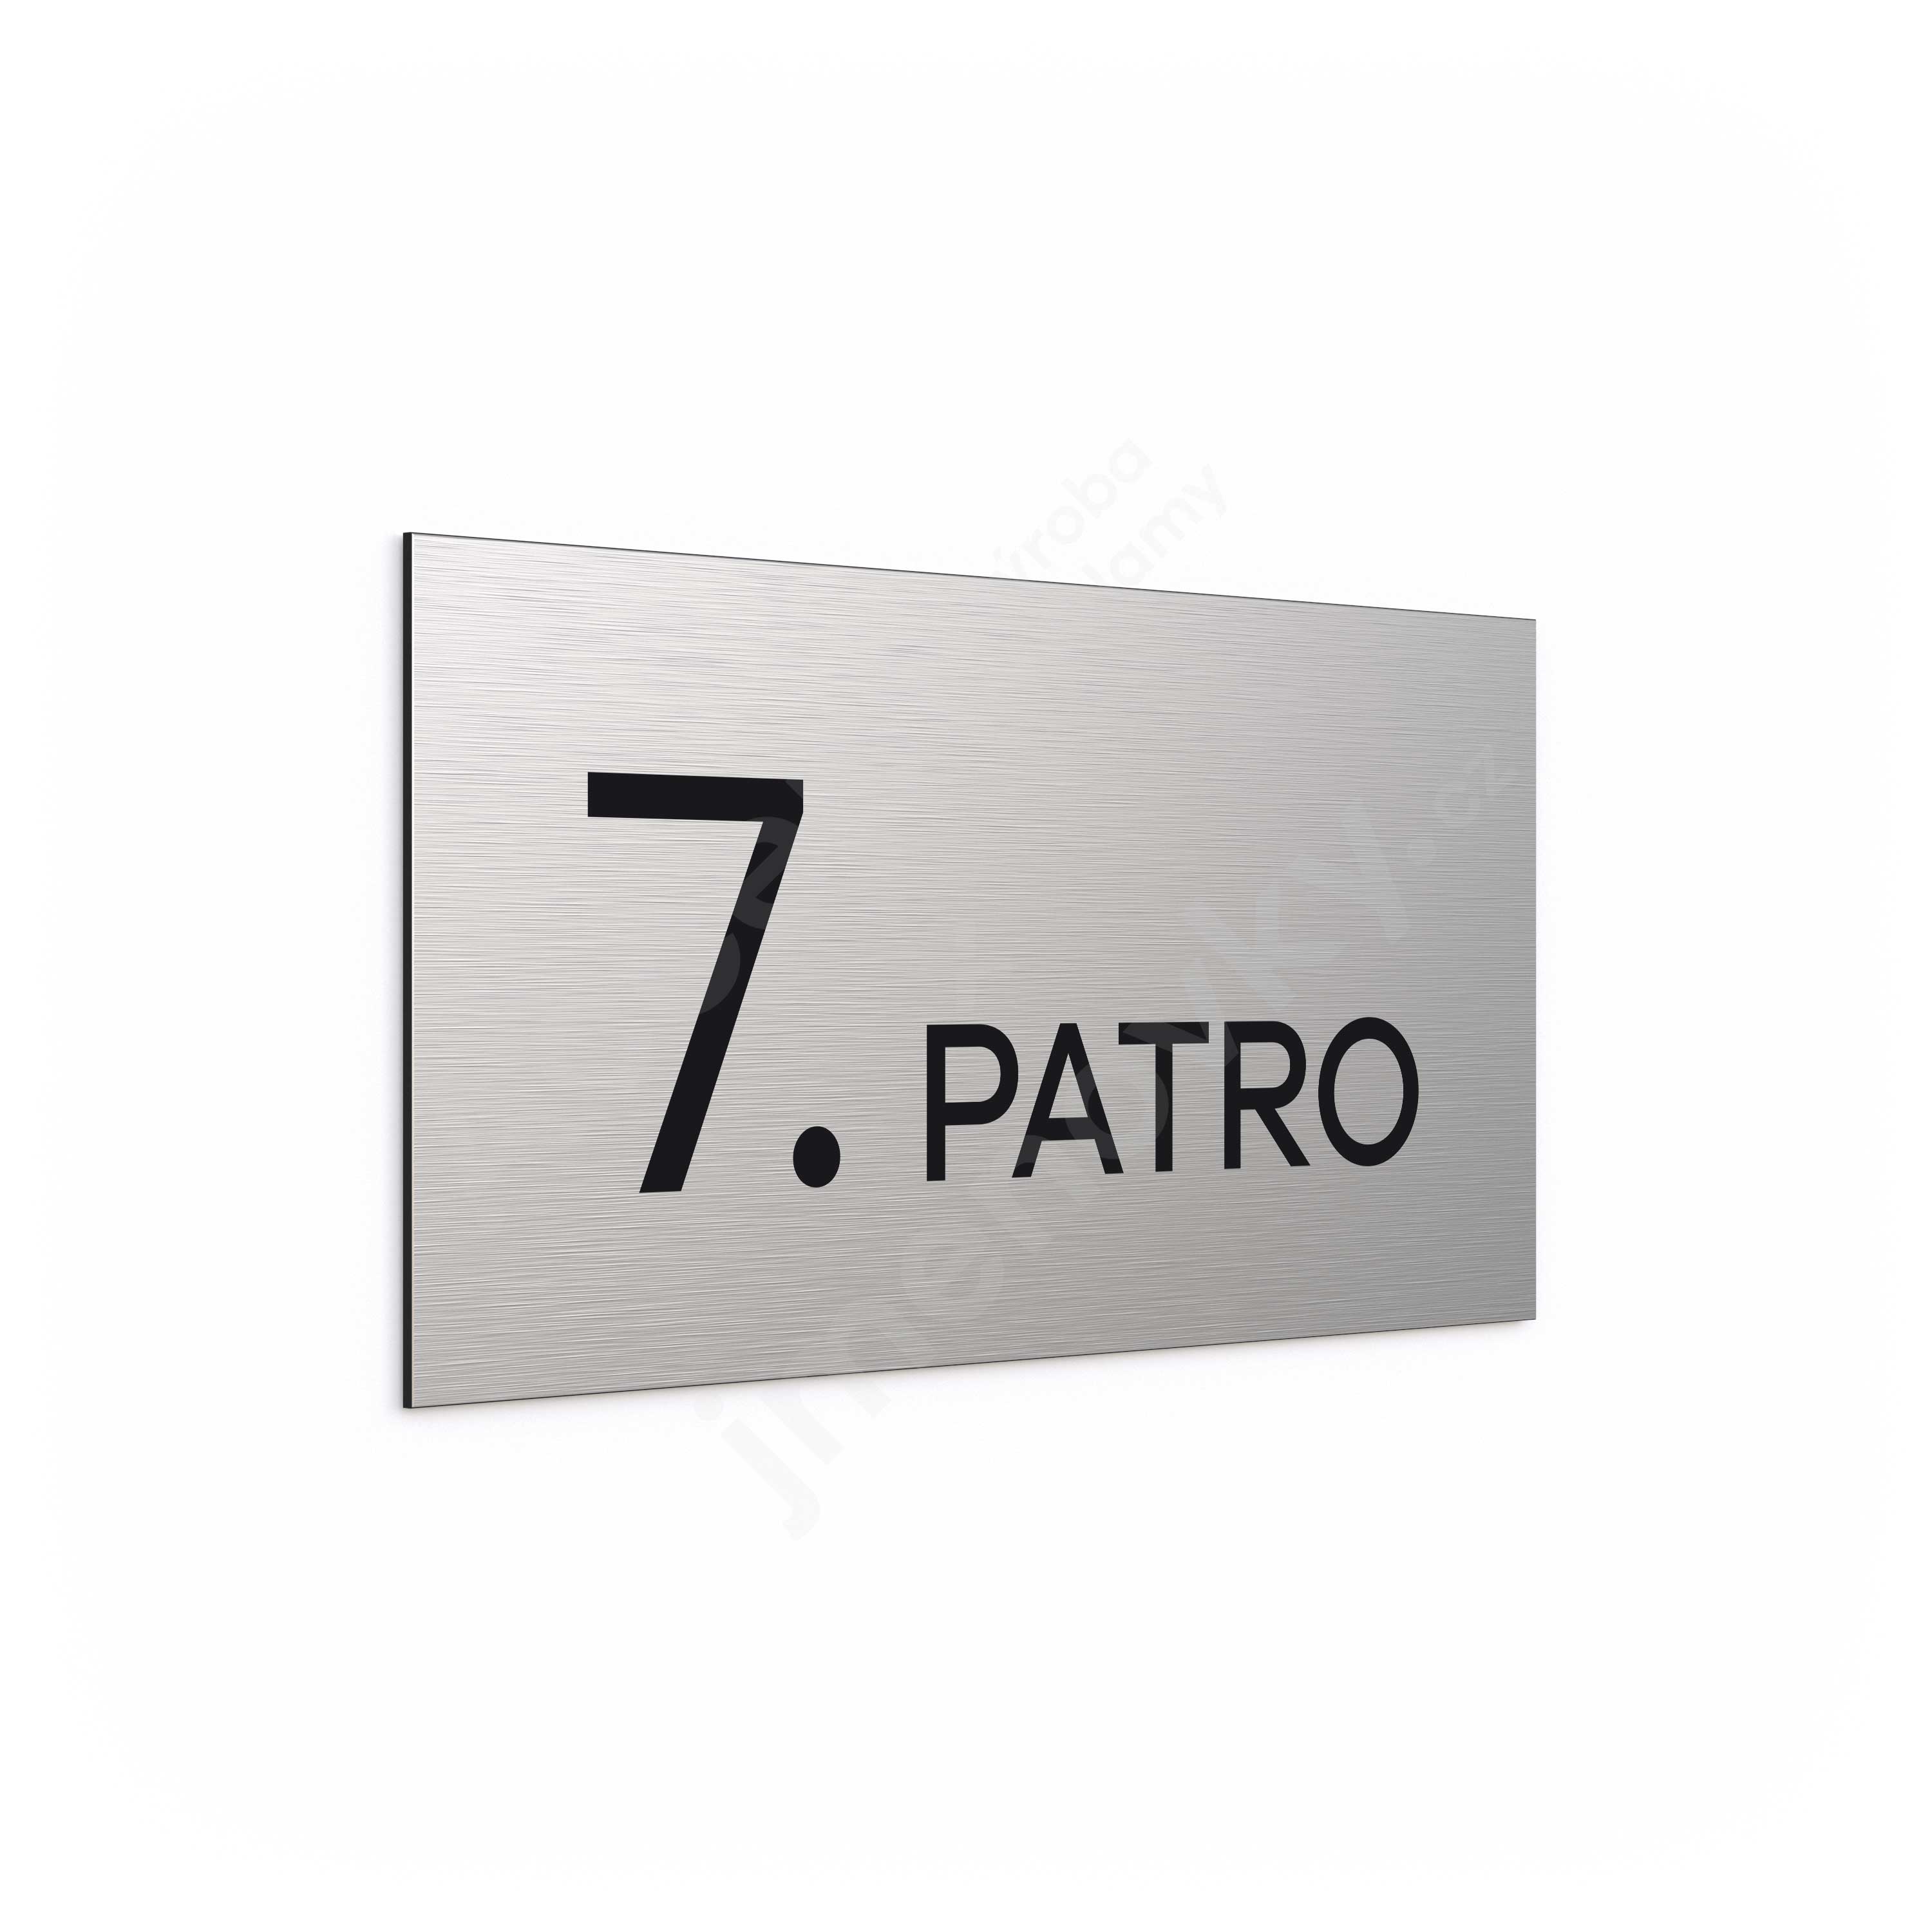 Oznaen podla "7. PATRO" - stbrn tabulka - ern popis